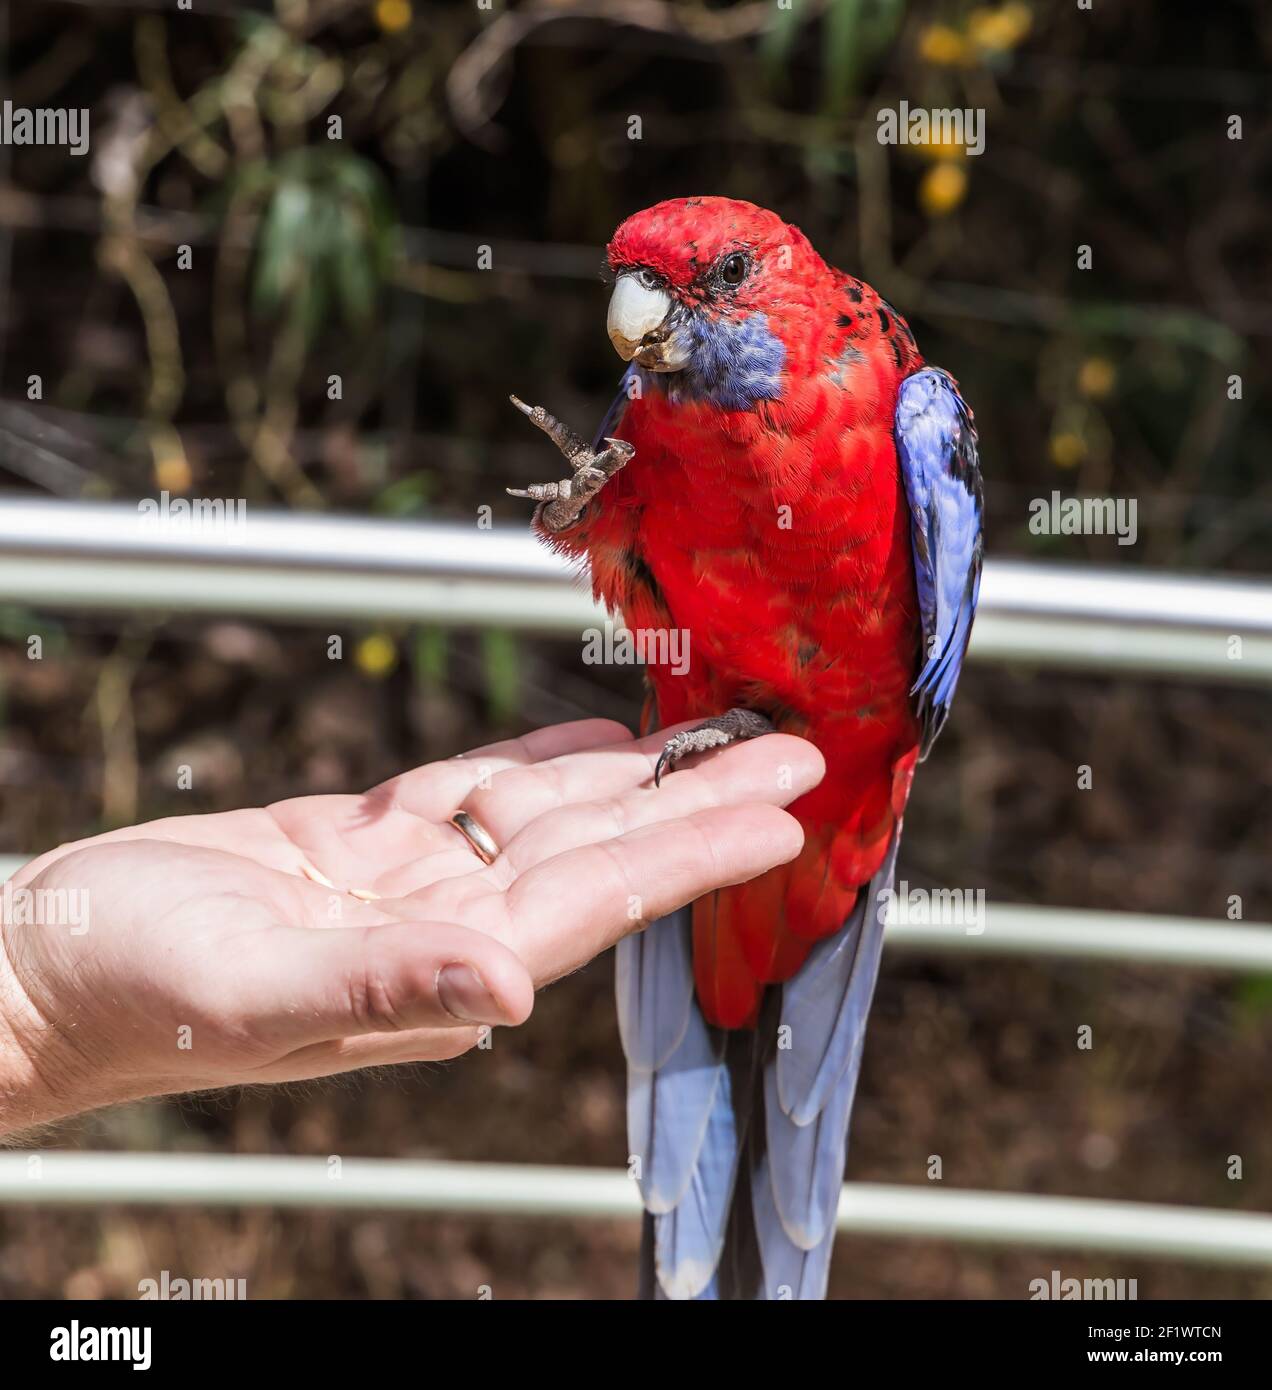 Australian parrot crimson rosella Stock Photo